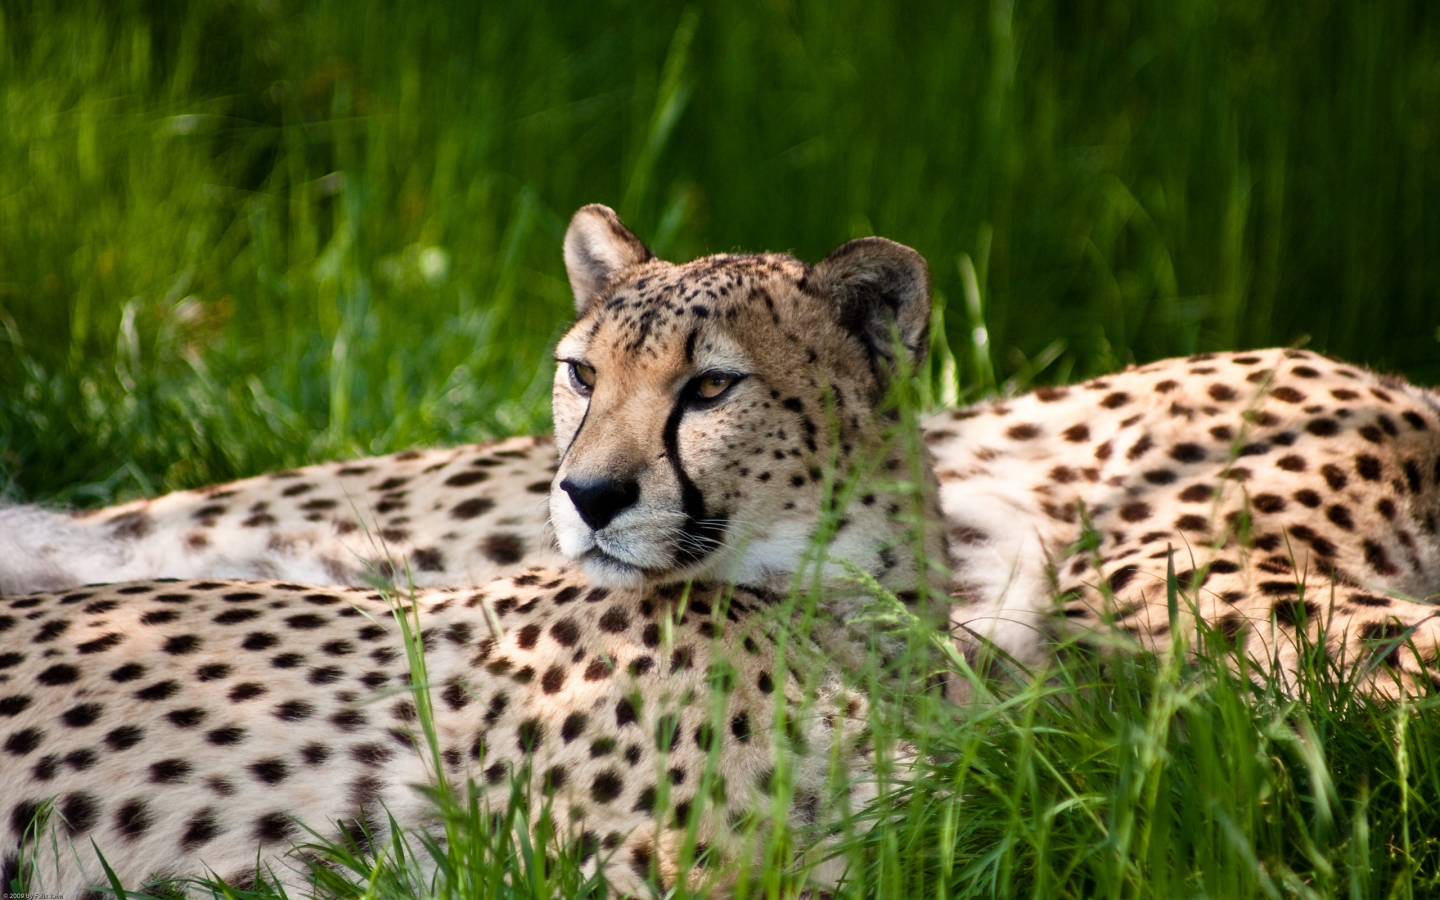 Cheetah Beauty for 1440 x 900 widescreen resolution